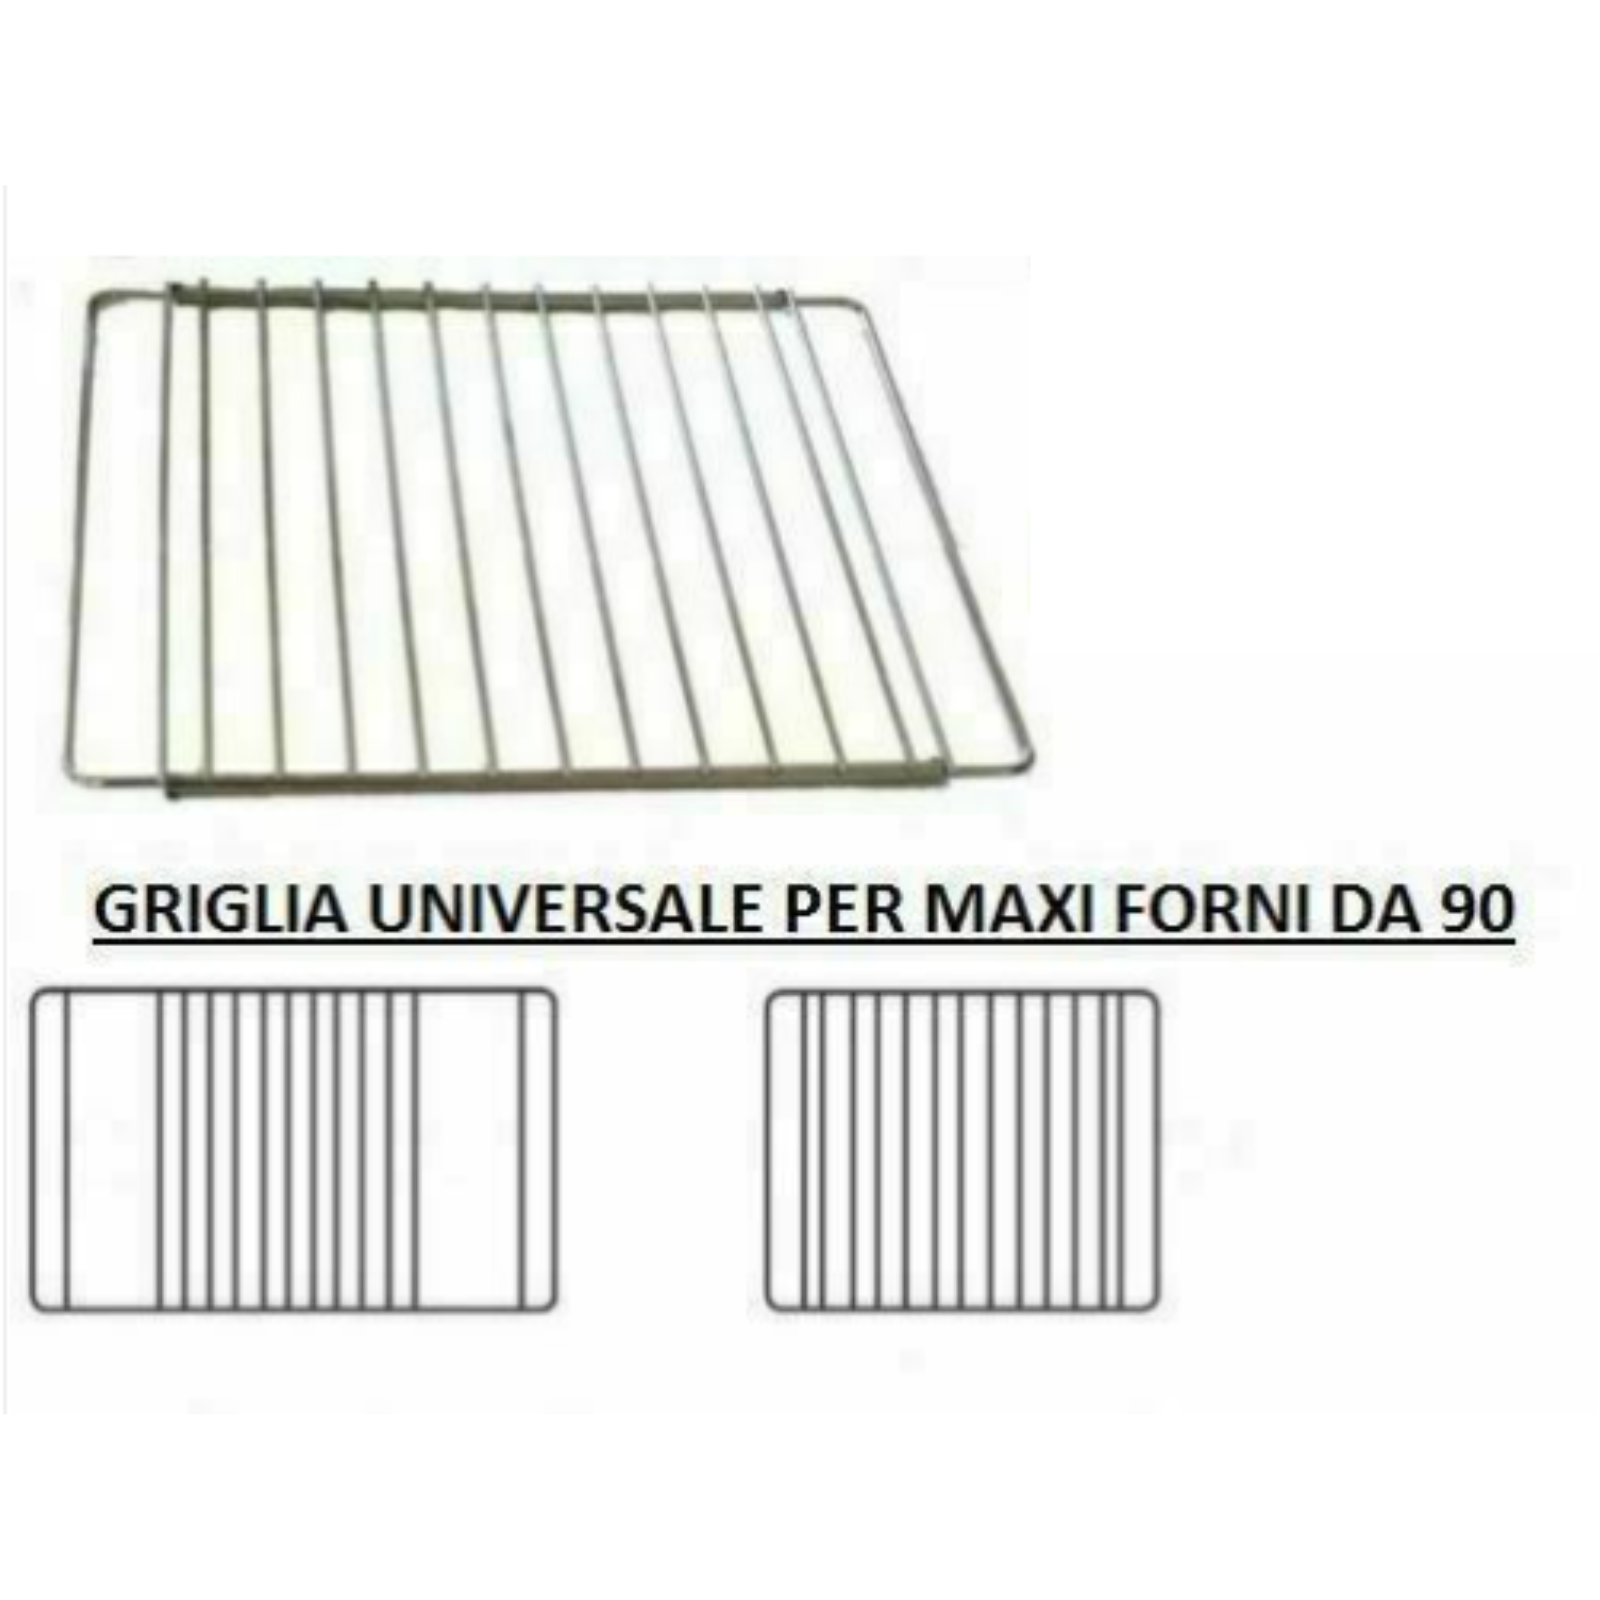 GRIGLIA RIPIANO PER MAXI FORNO DA 90 cm REGOLABILE -UNIVERSALE